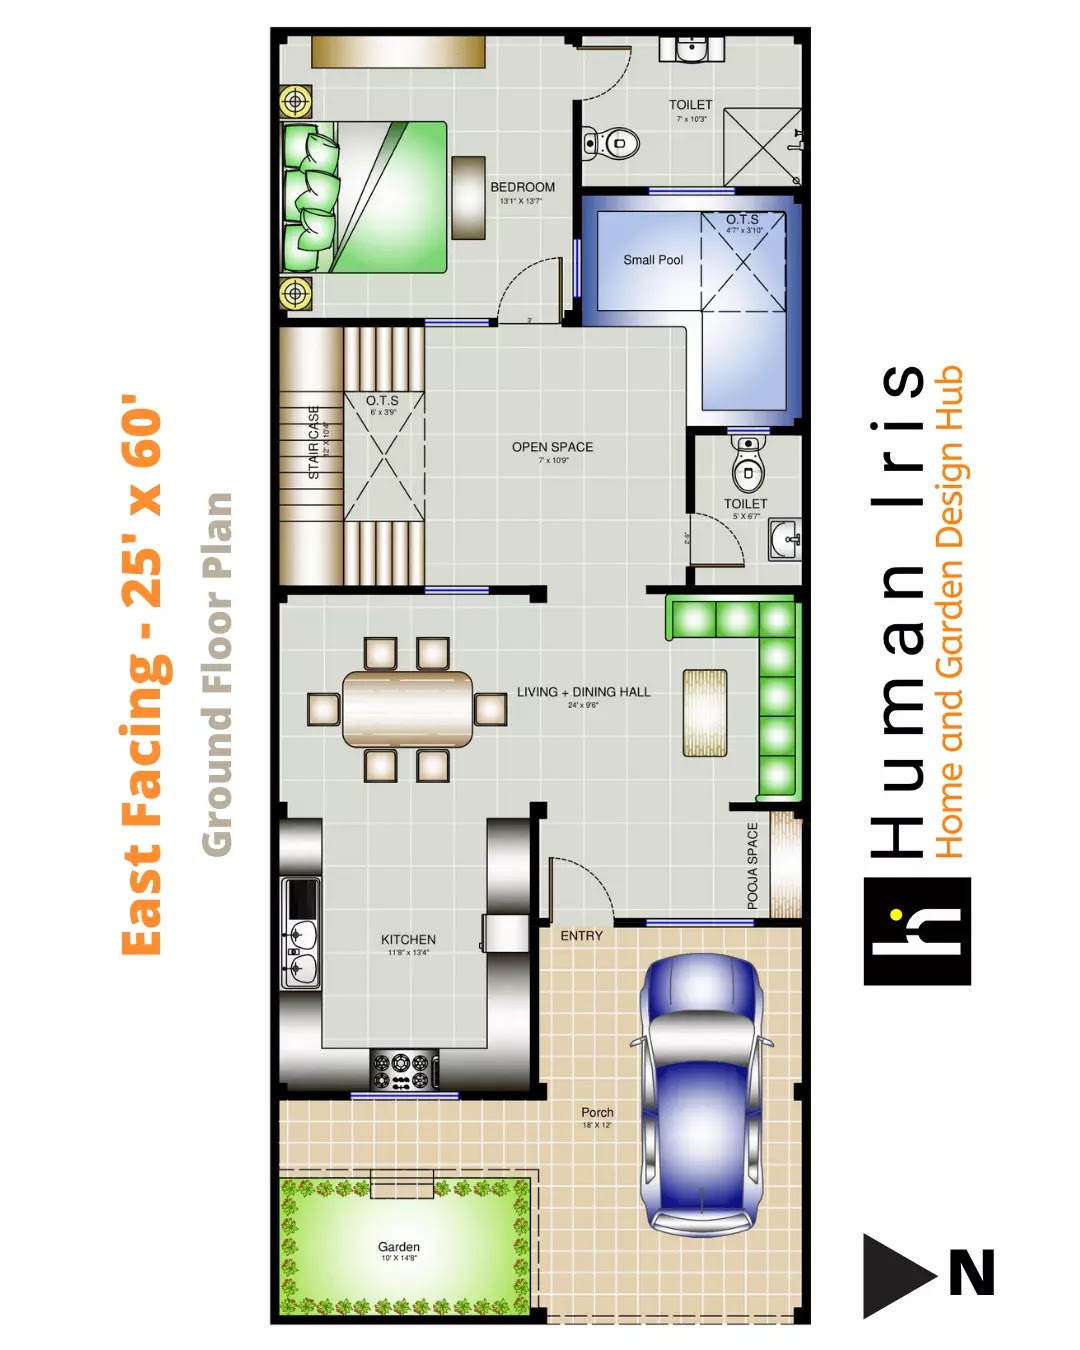 25' x 60' Residence Layout Plan